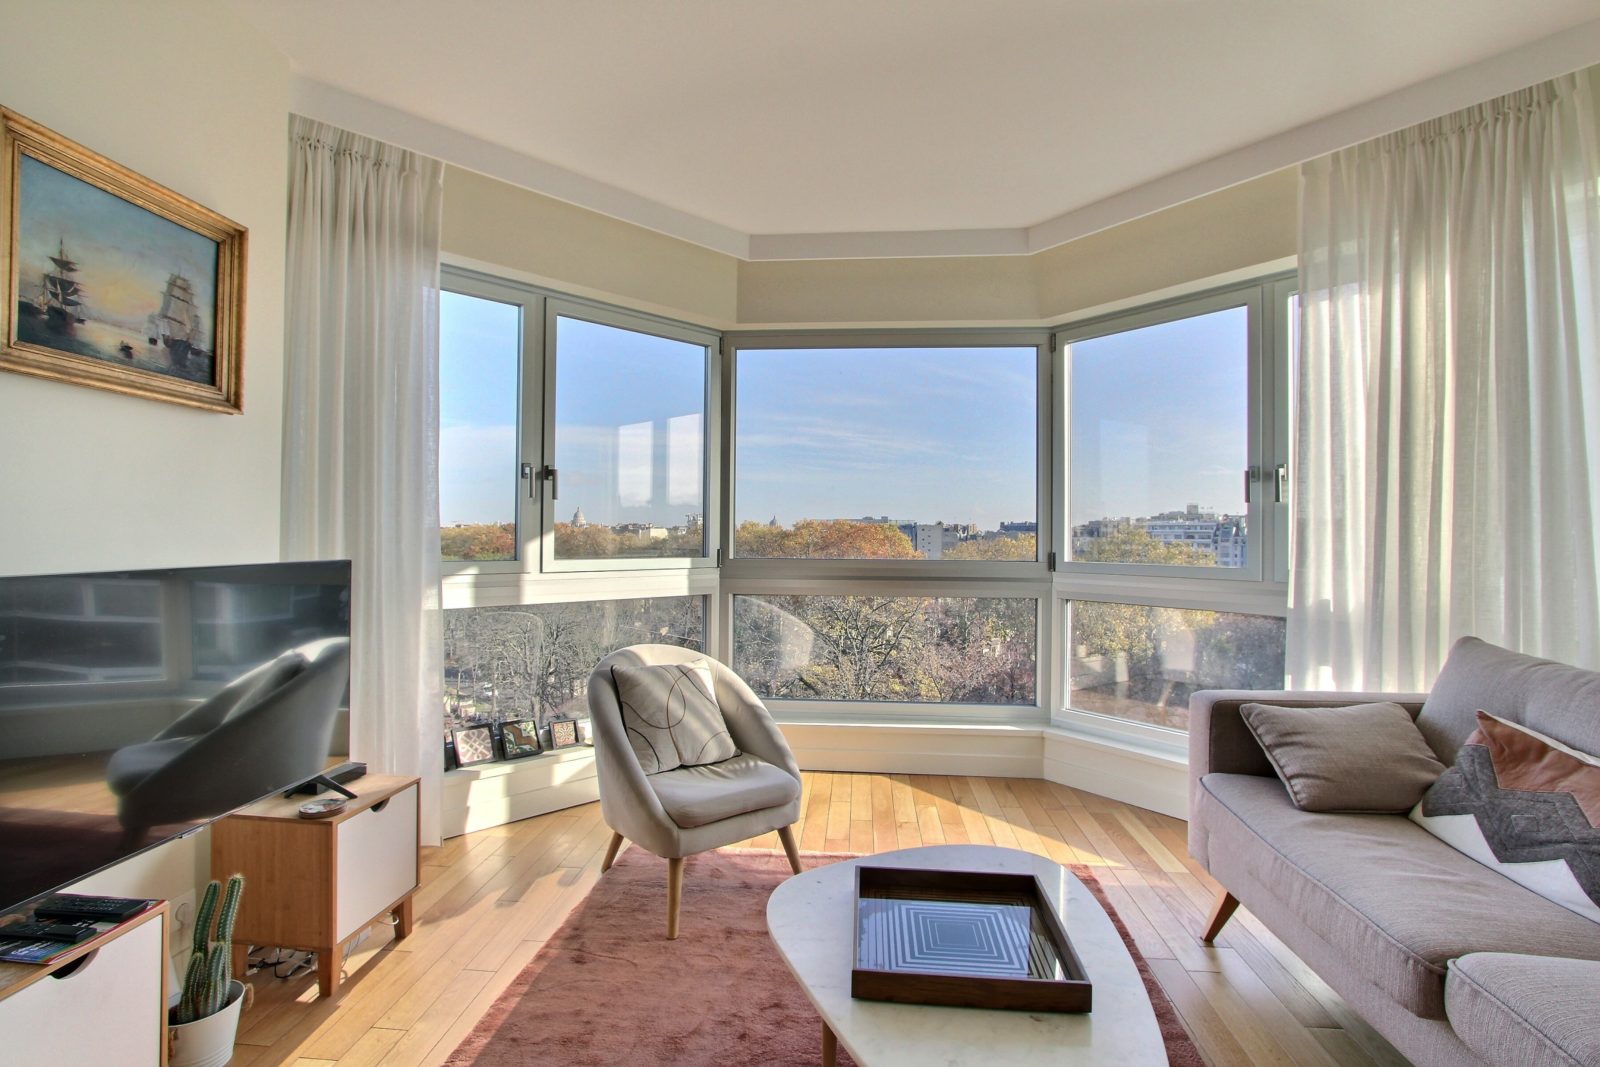 1 bedroom apartment with open view in Montparnasse neighbourhood